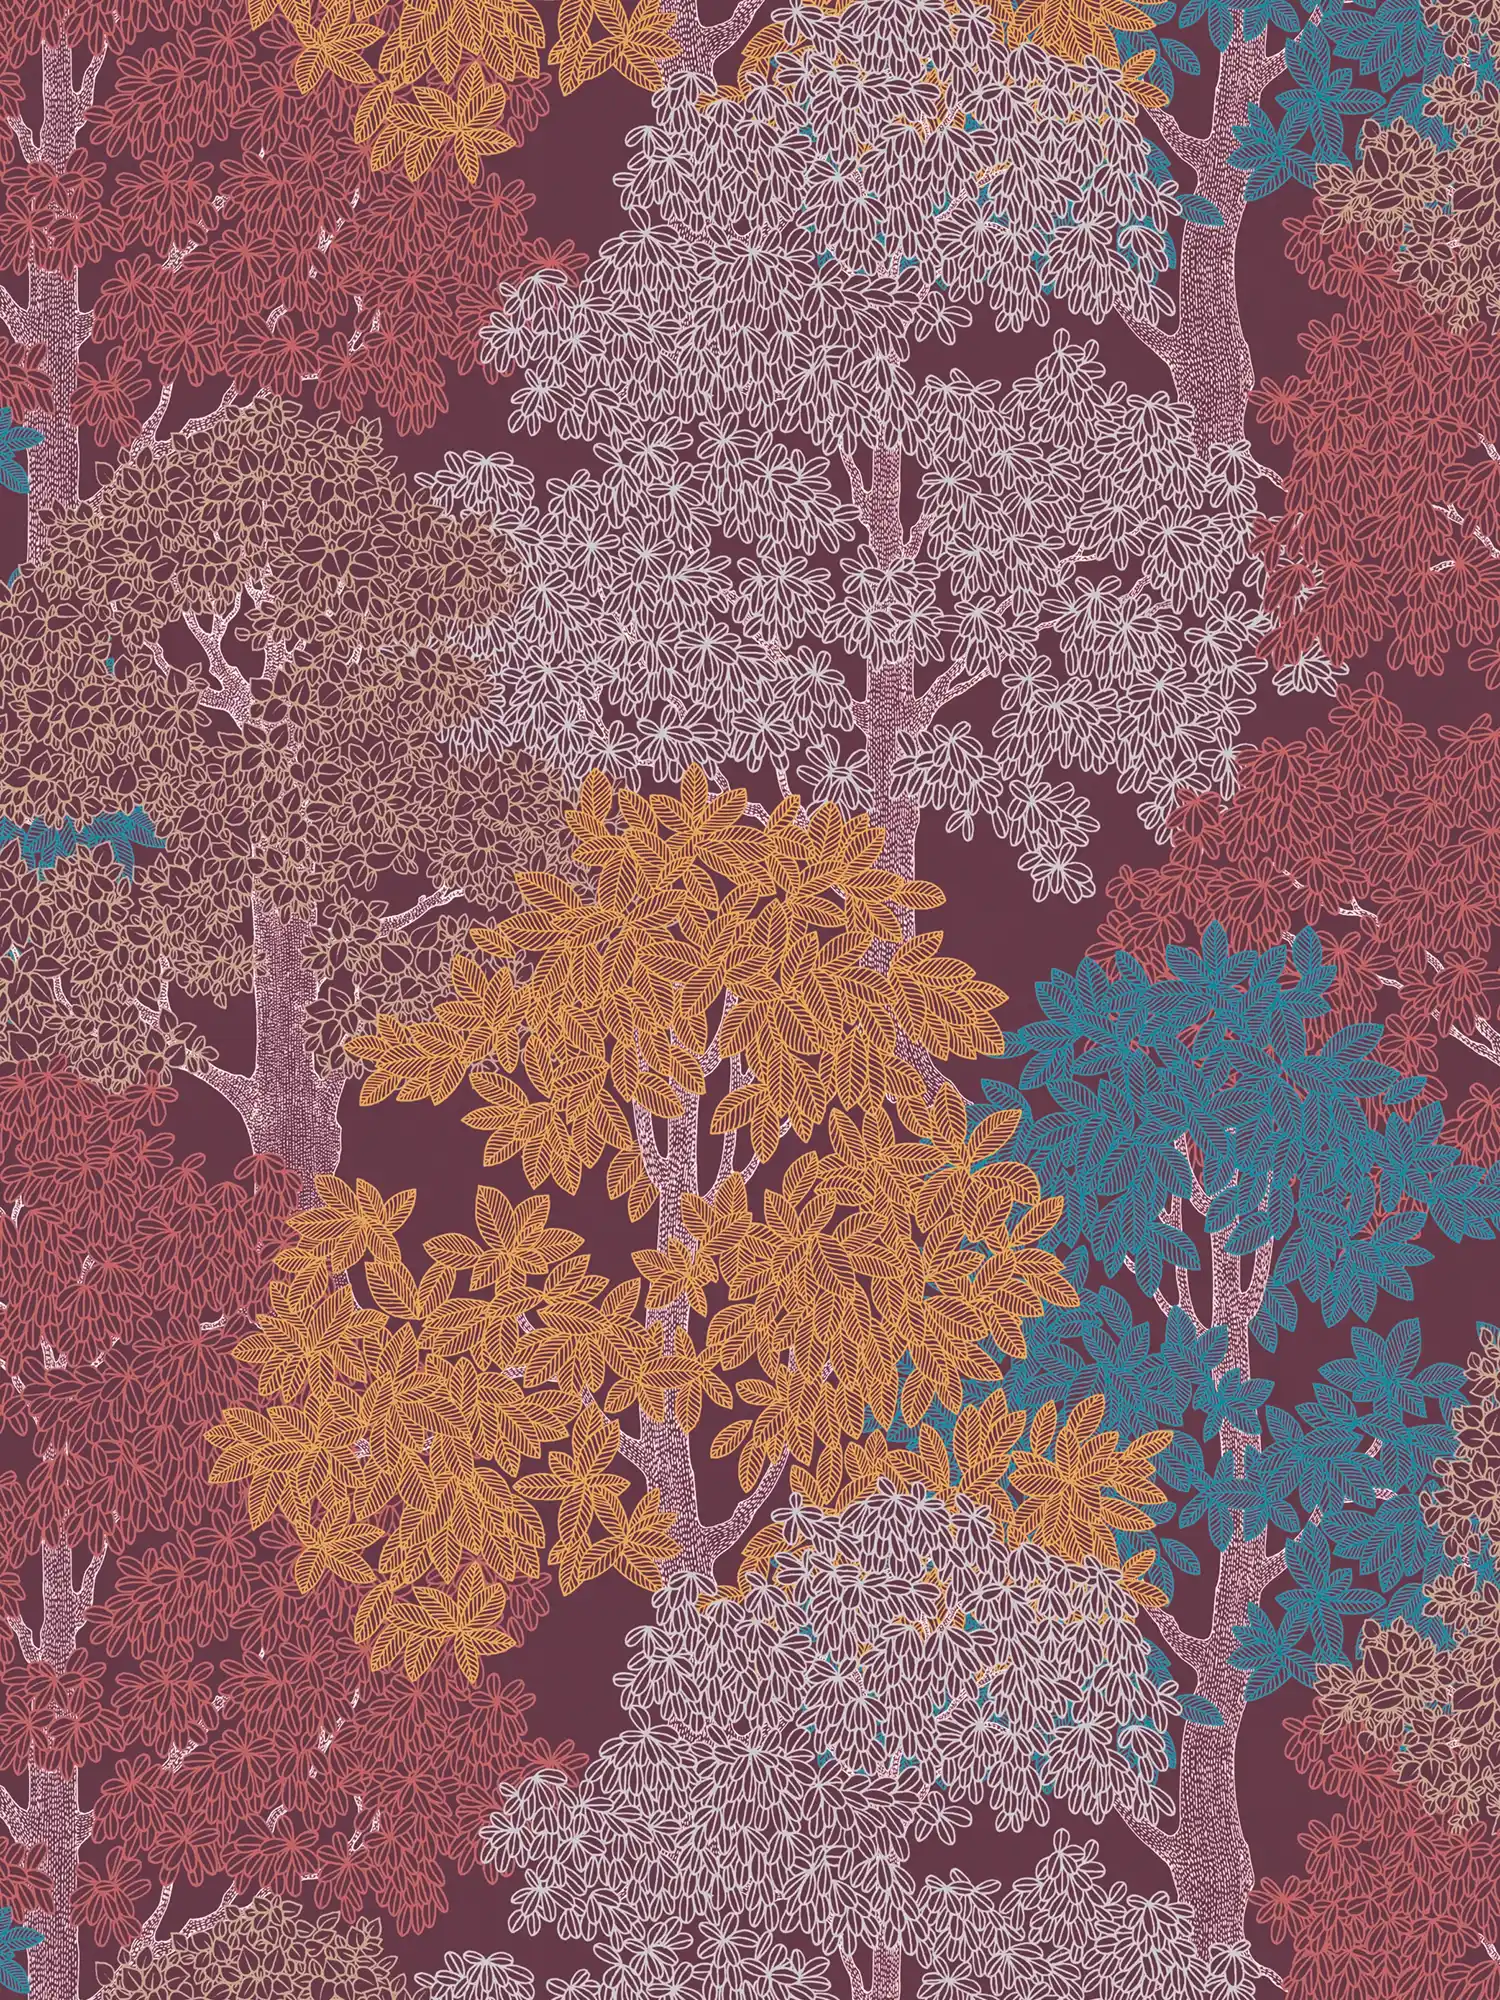         Carta da parati rosso vino con motivi forestali e alberi in stile disegno - viola, rosso, giallo
    